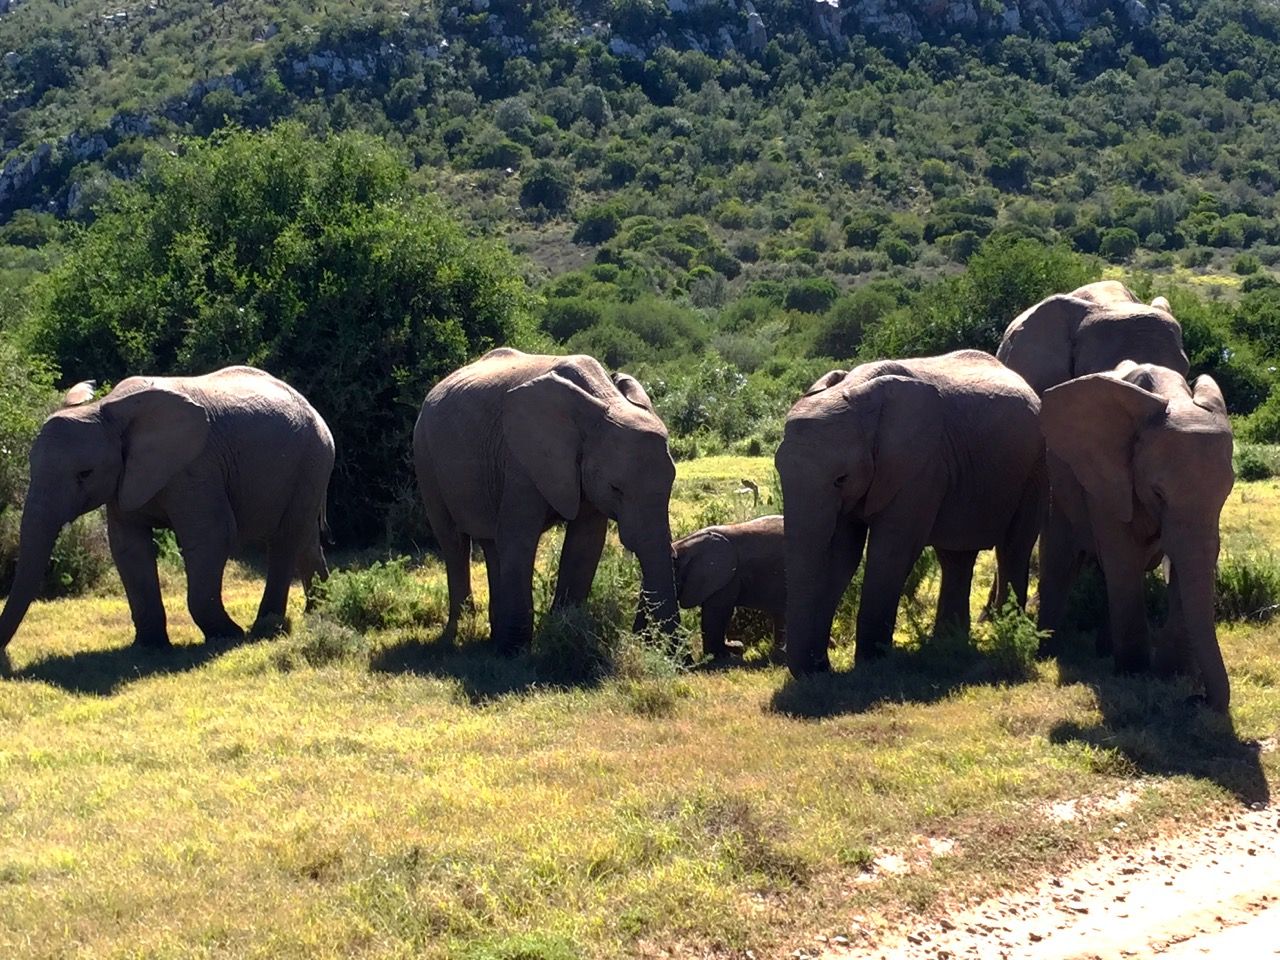 A herd of elephants grazing in a field.